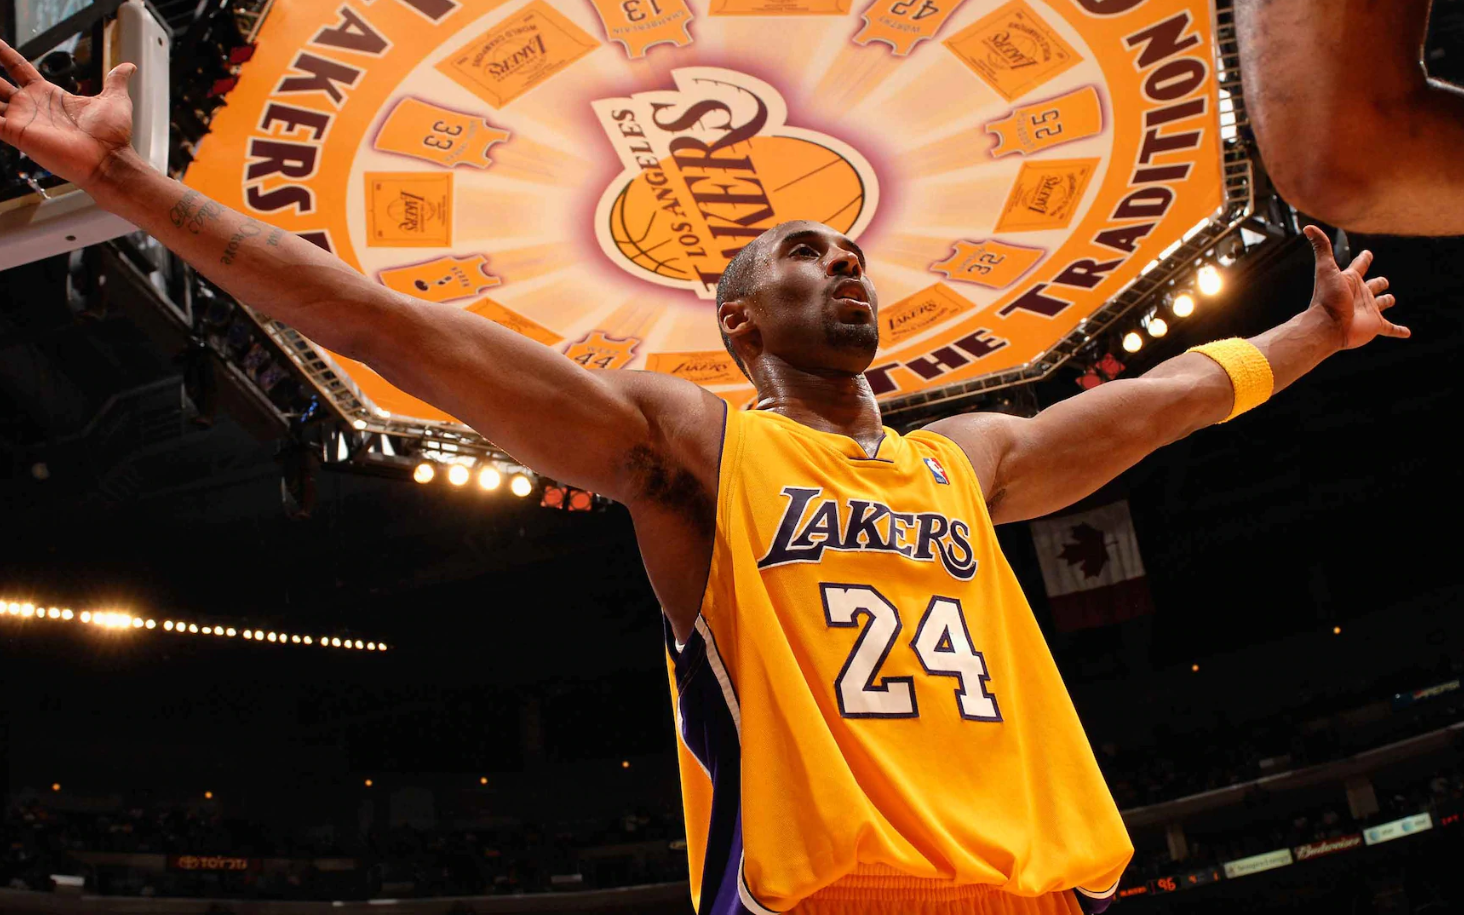 Bất ngờ số tiền phải bỏ ra để có một tấm vé trong ngày Los Angeles Lakers làm lễ tri ân tới huyền thoại Kobe Bryant